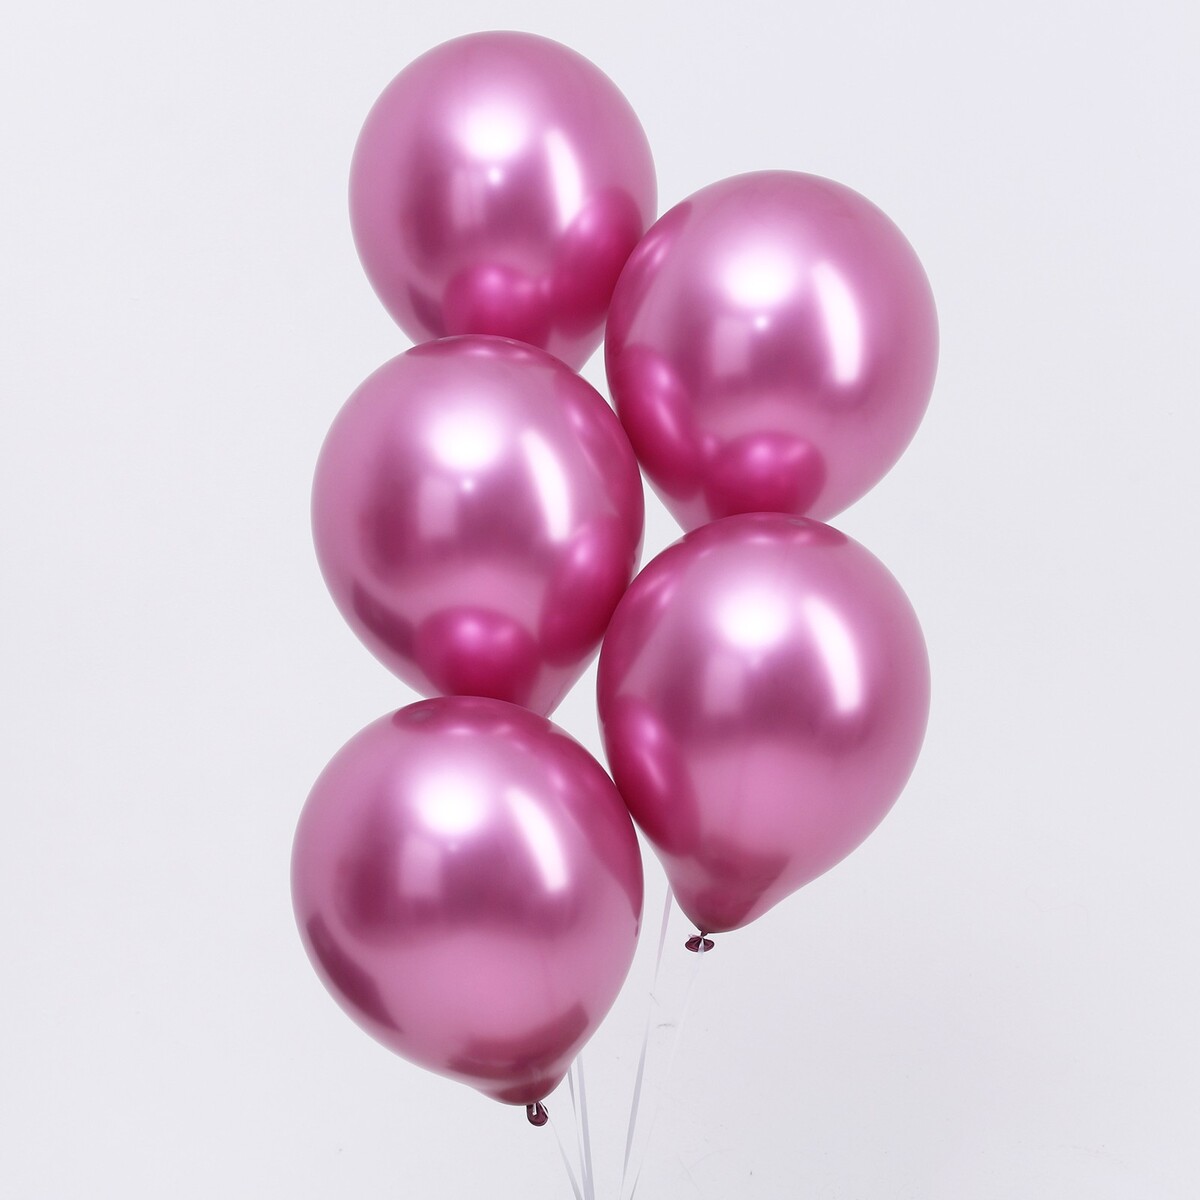 Шар латексный 12“, хром, в наборе 100 шт., цвет насыщенный розовый шар латексный 12“ хром набор 25 шт насыщенный бордо